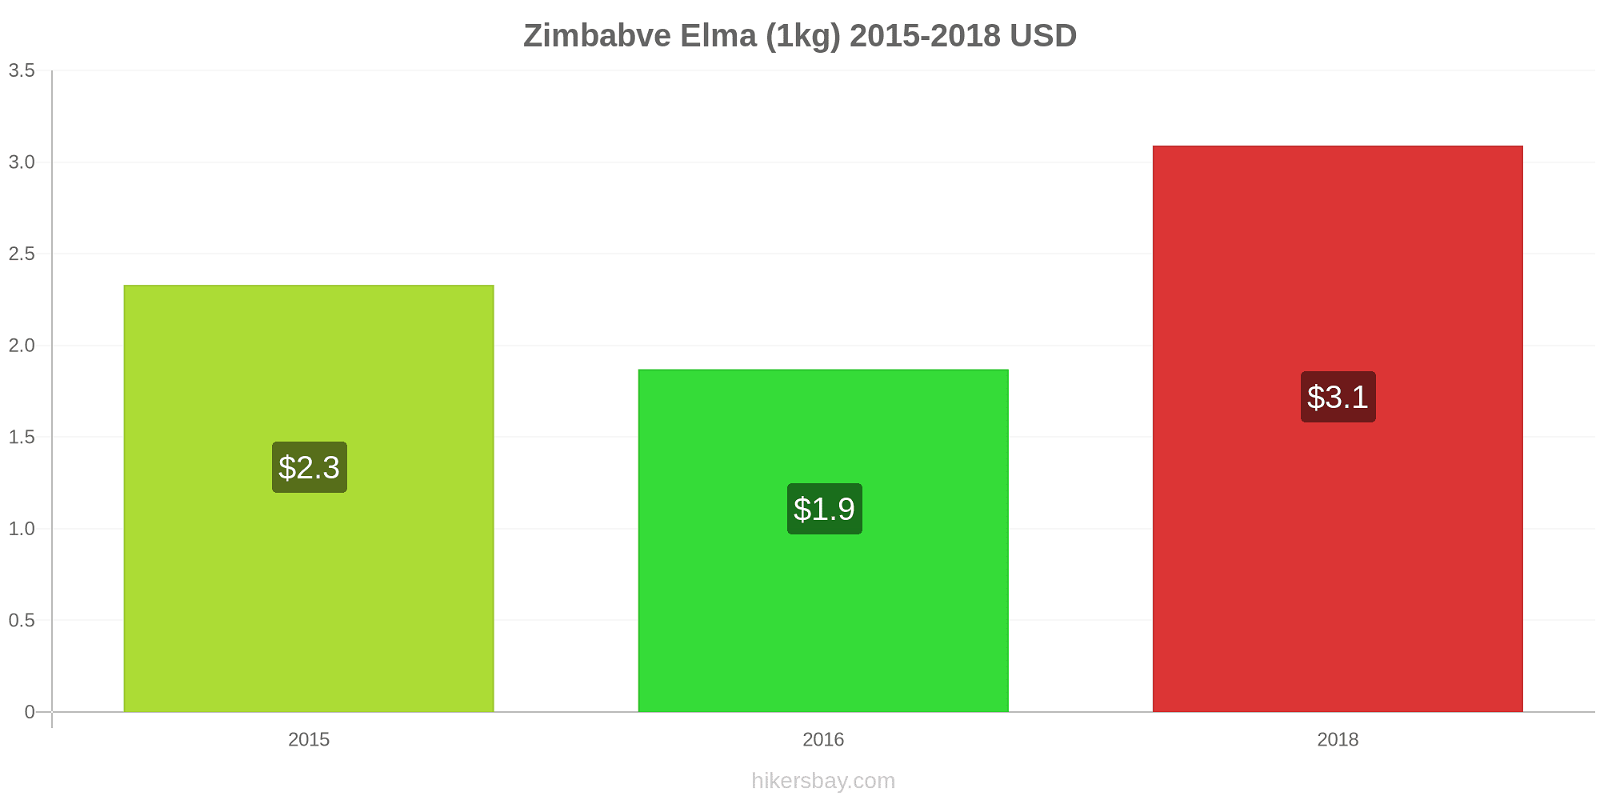 Zimbabve fiyat değişiklikleri Elma (1kg) hikersbay.com